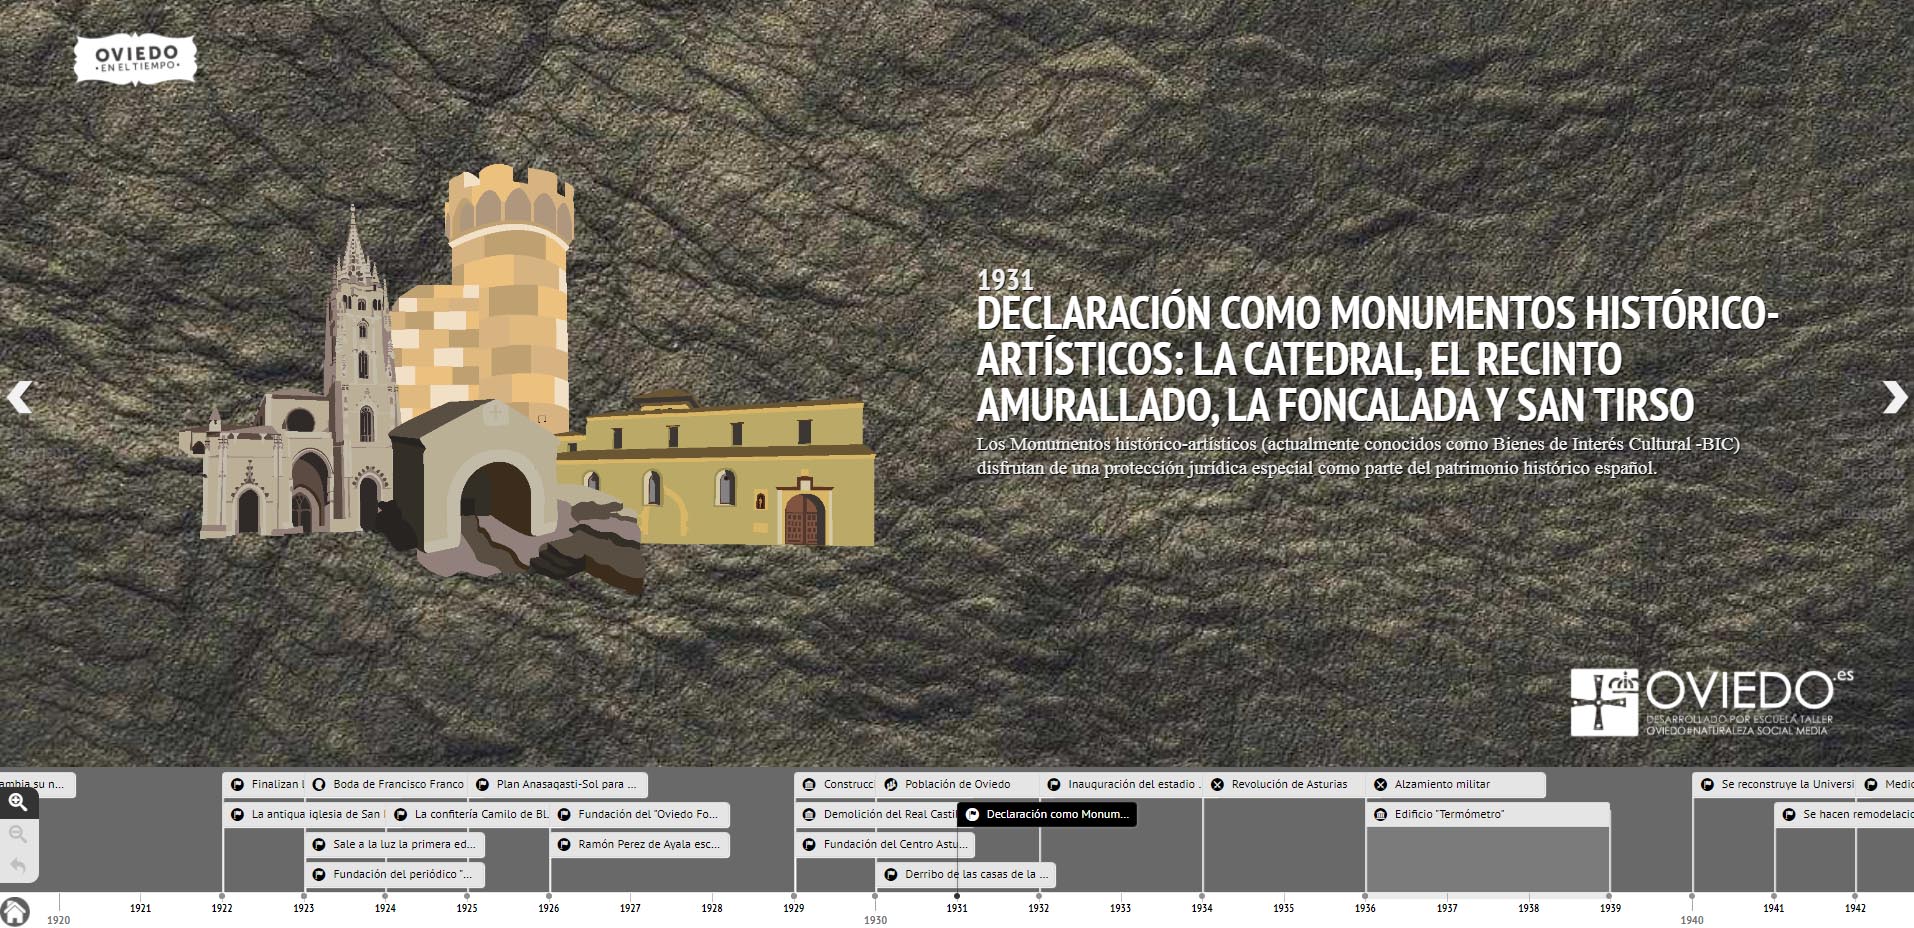 Imagen vectorizada de la página web Oviedo en el tiempo, en el que se muestra una línea cronológica con los hitos más relevantes de la ciudad a lo largo de la historia.